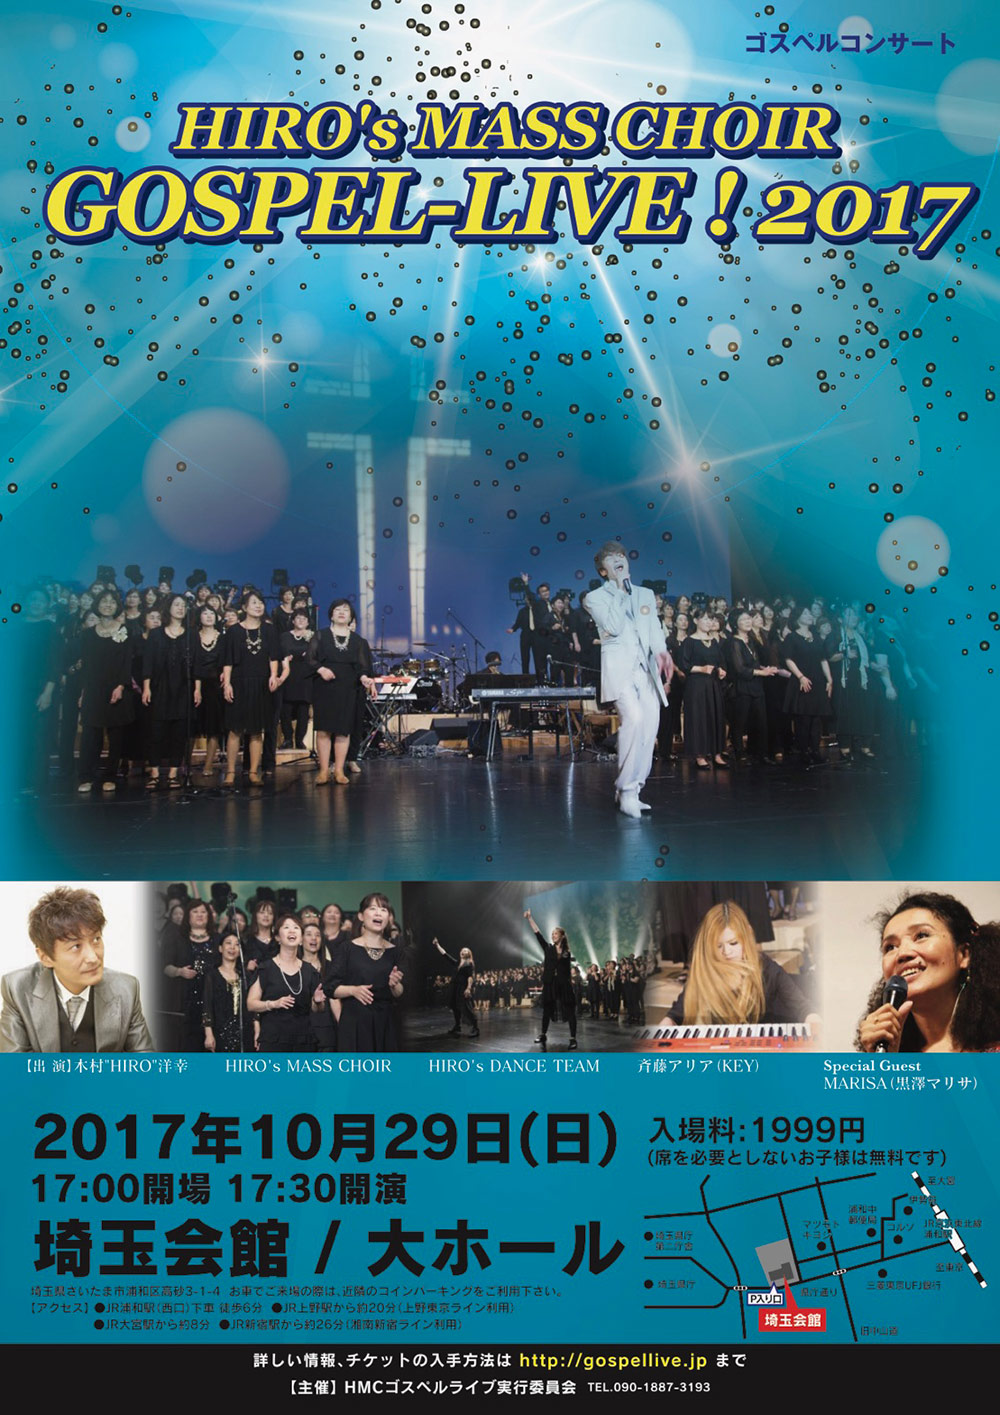 〜HIRO's MASS CHOIR GOSPEL-LIVE ! 2017〜